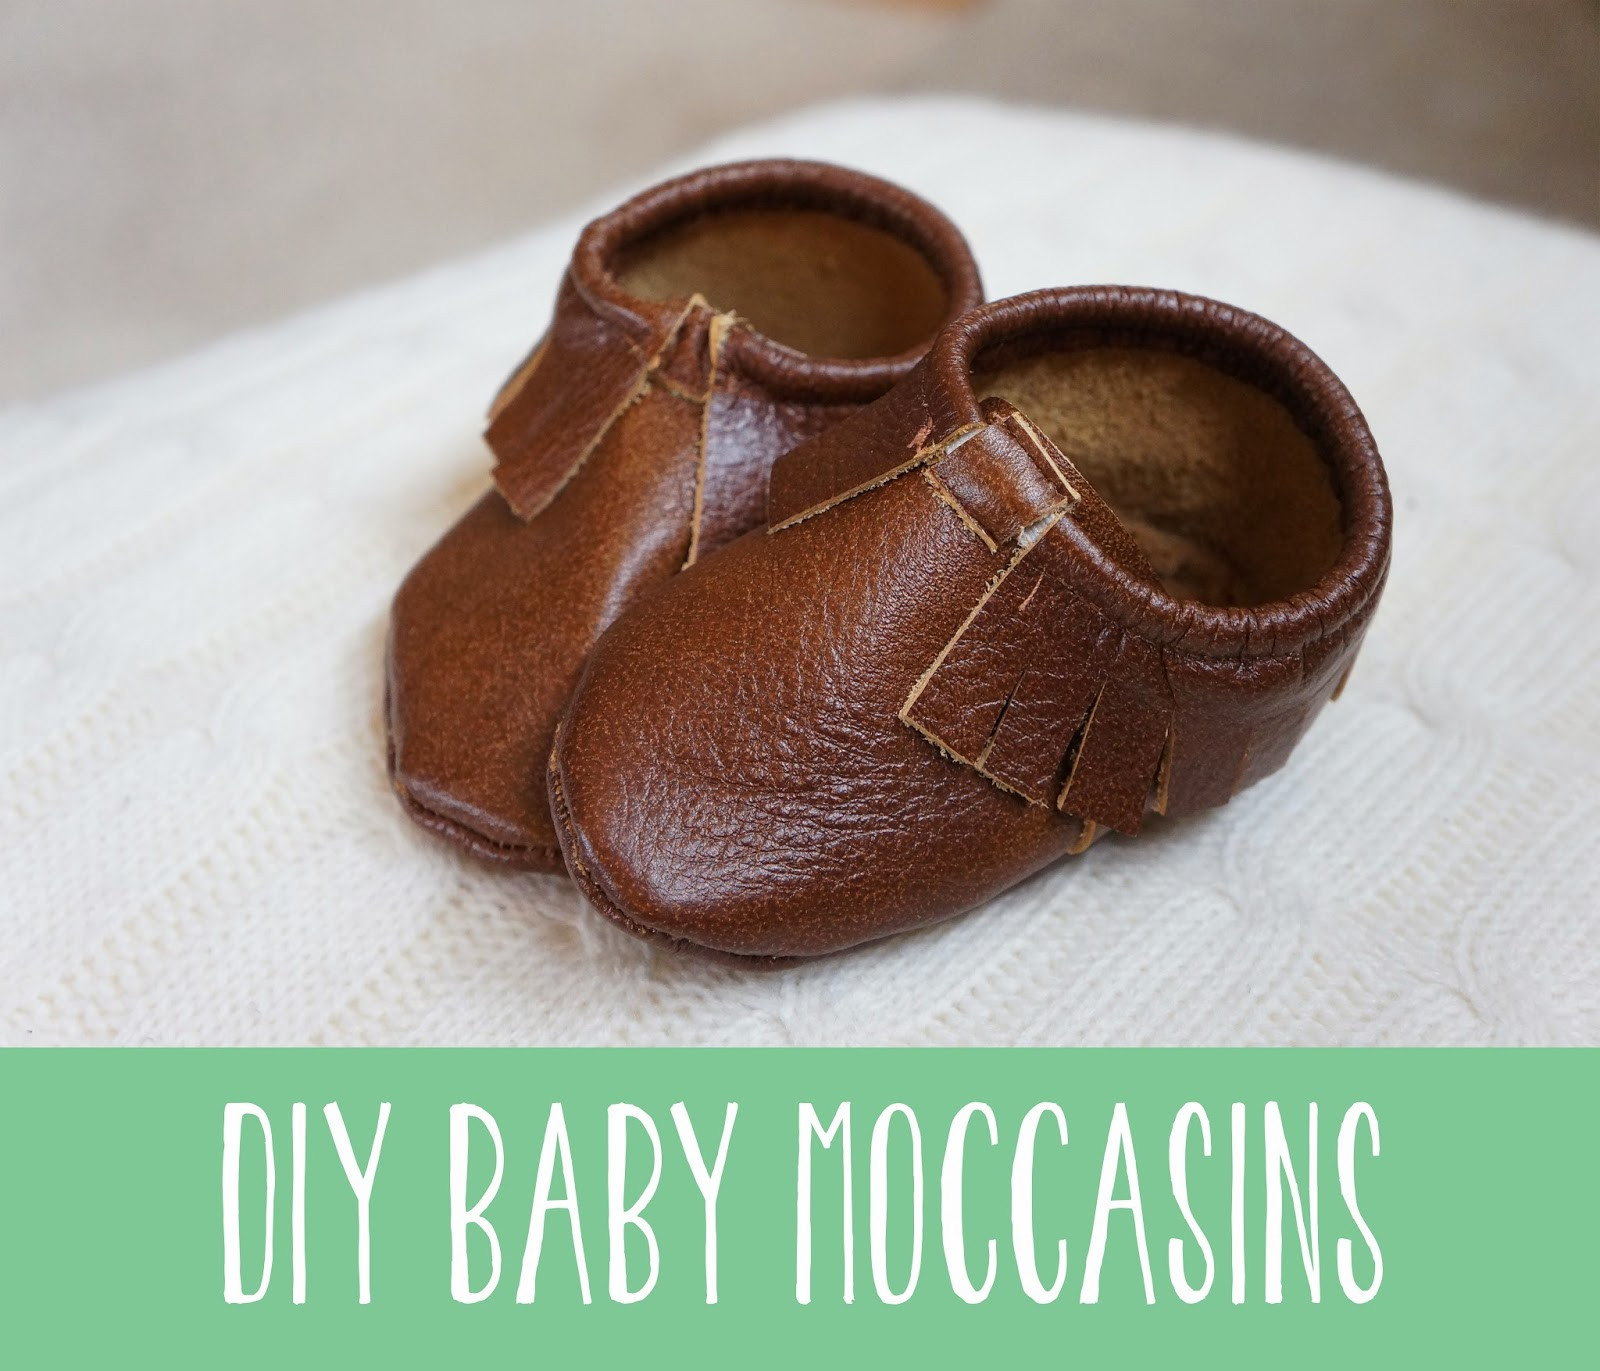 DIY Baby Moccasins
 5 CUTE DIY BABY MOCCASINS